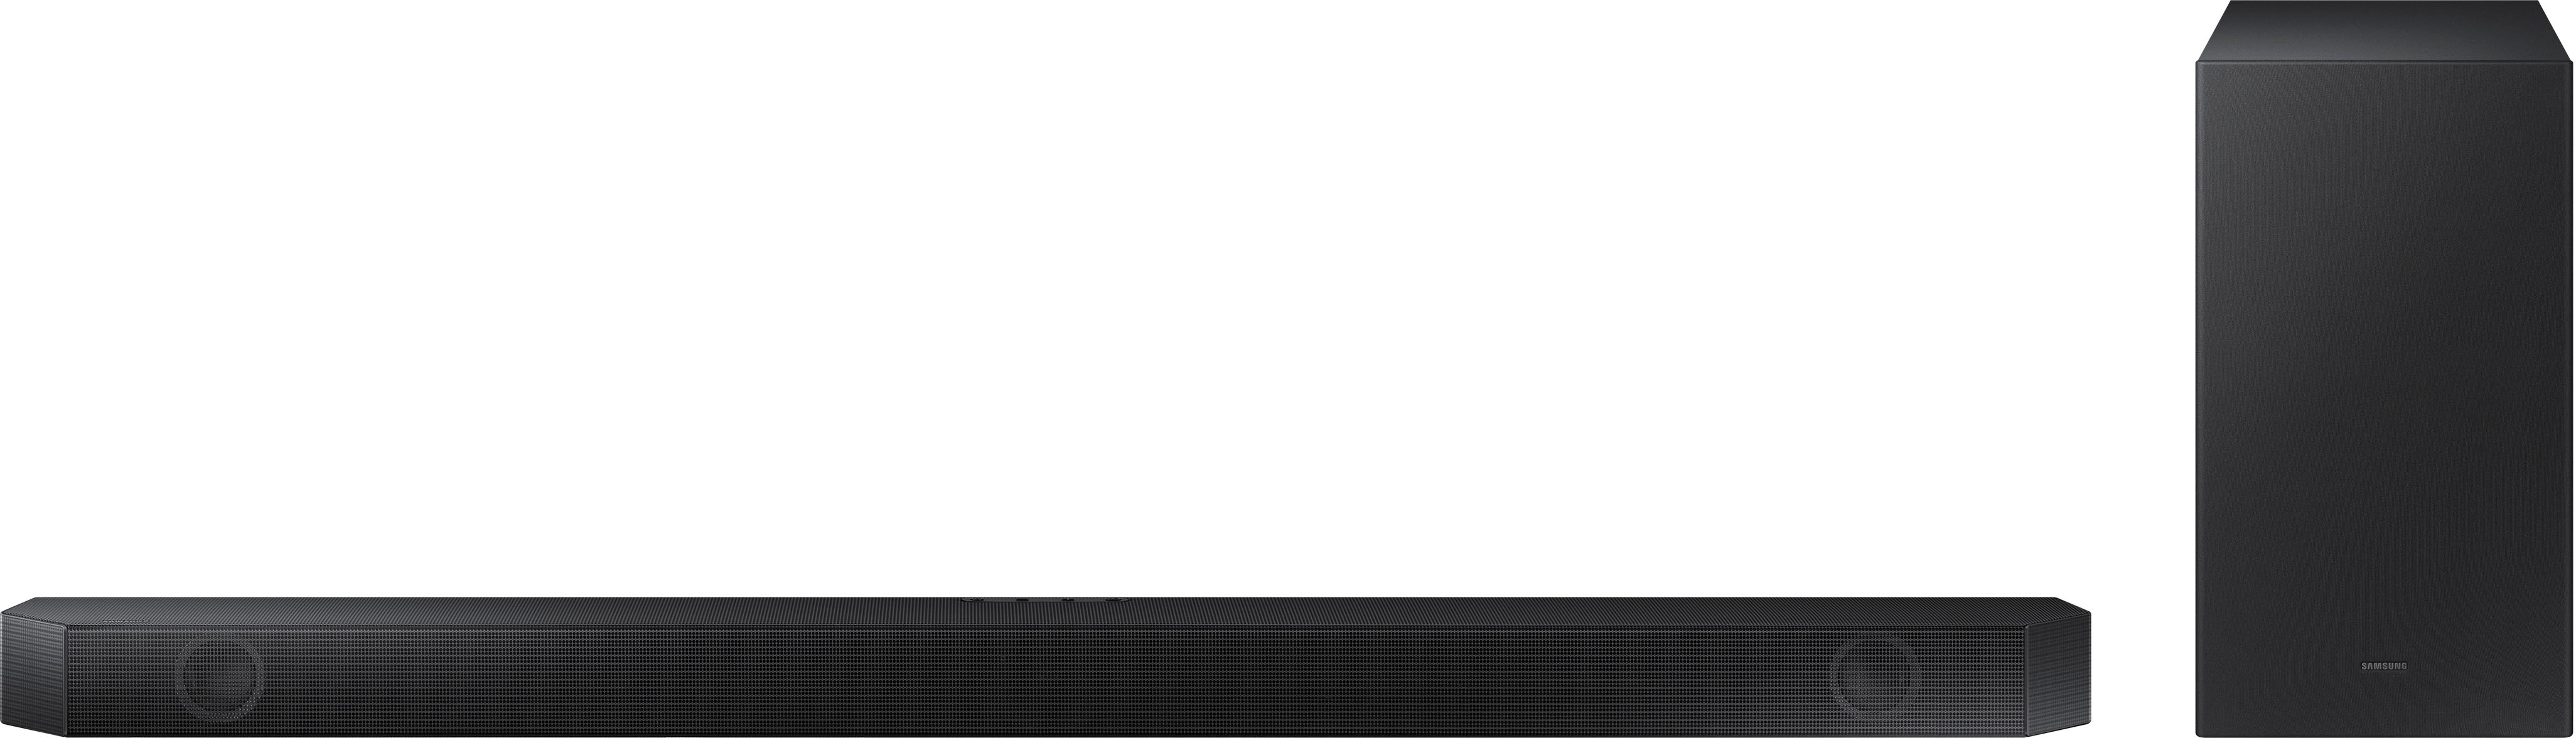 Samsung HW-Q600B 3.1.2ch Soundbar with Dolby Atmos / DTS:X Black  HW-Q600B/ZA - Best Buy